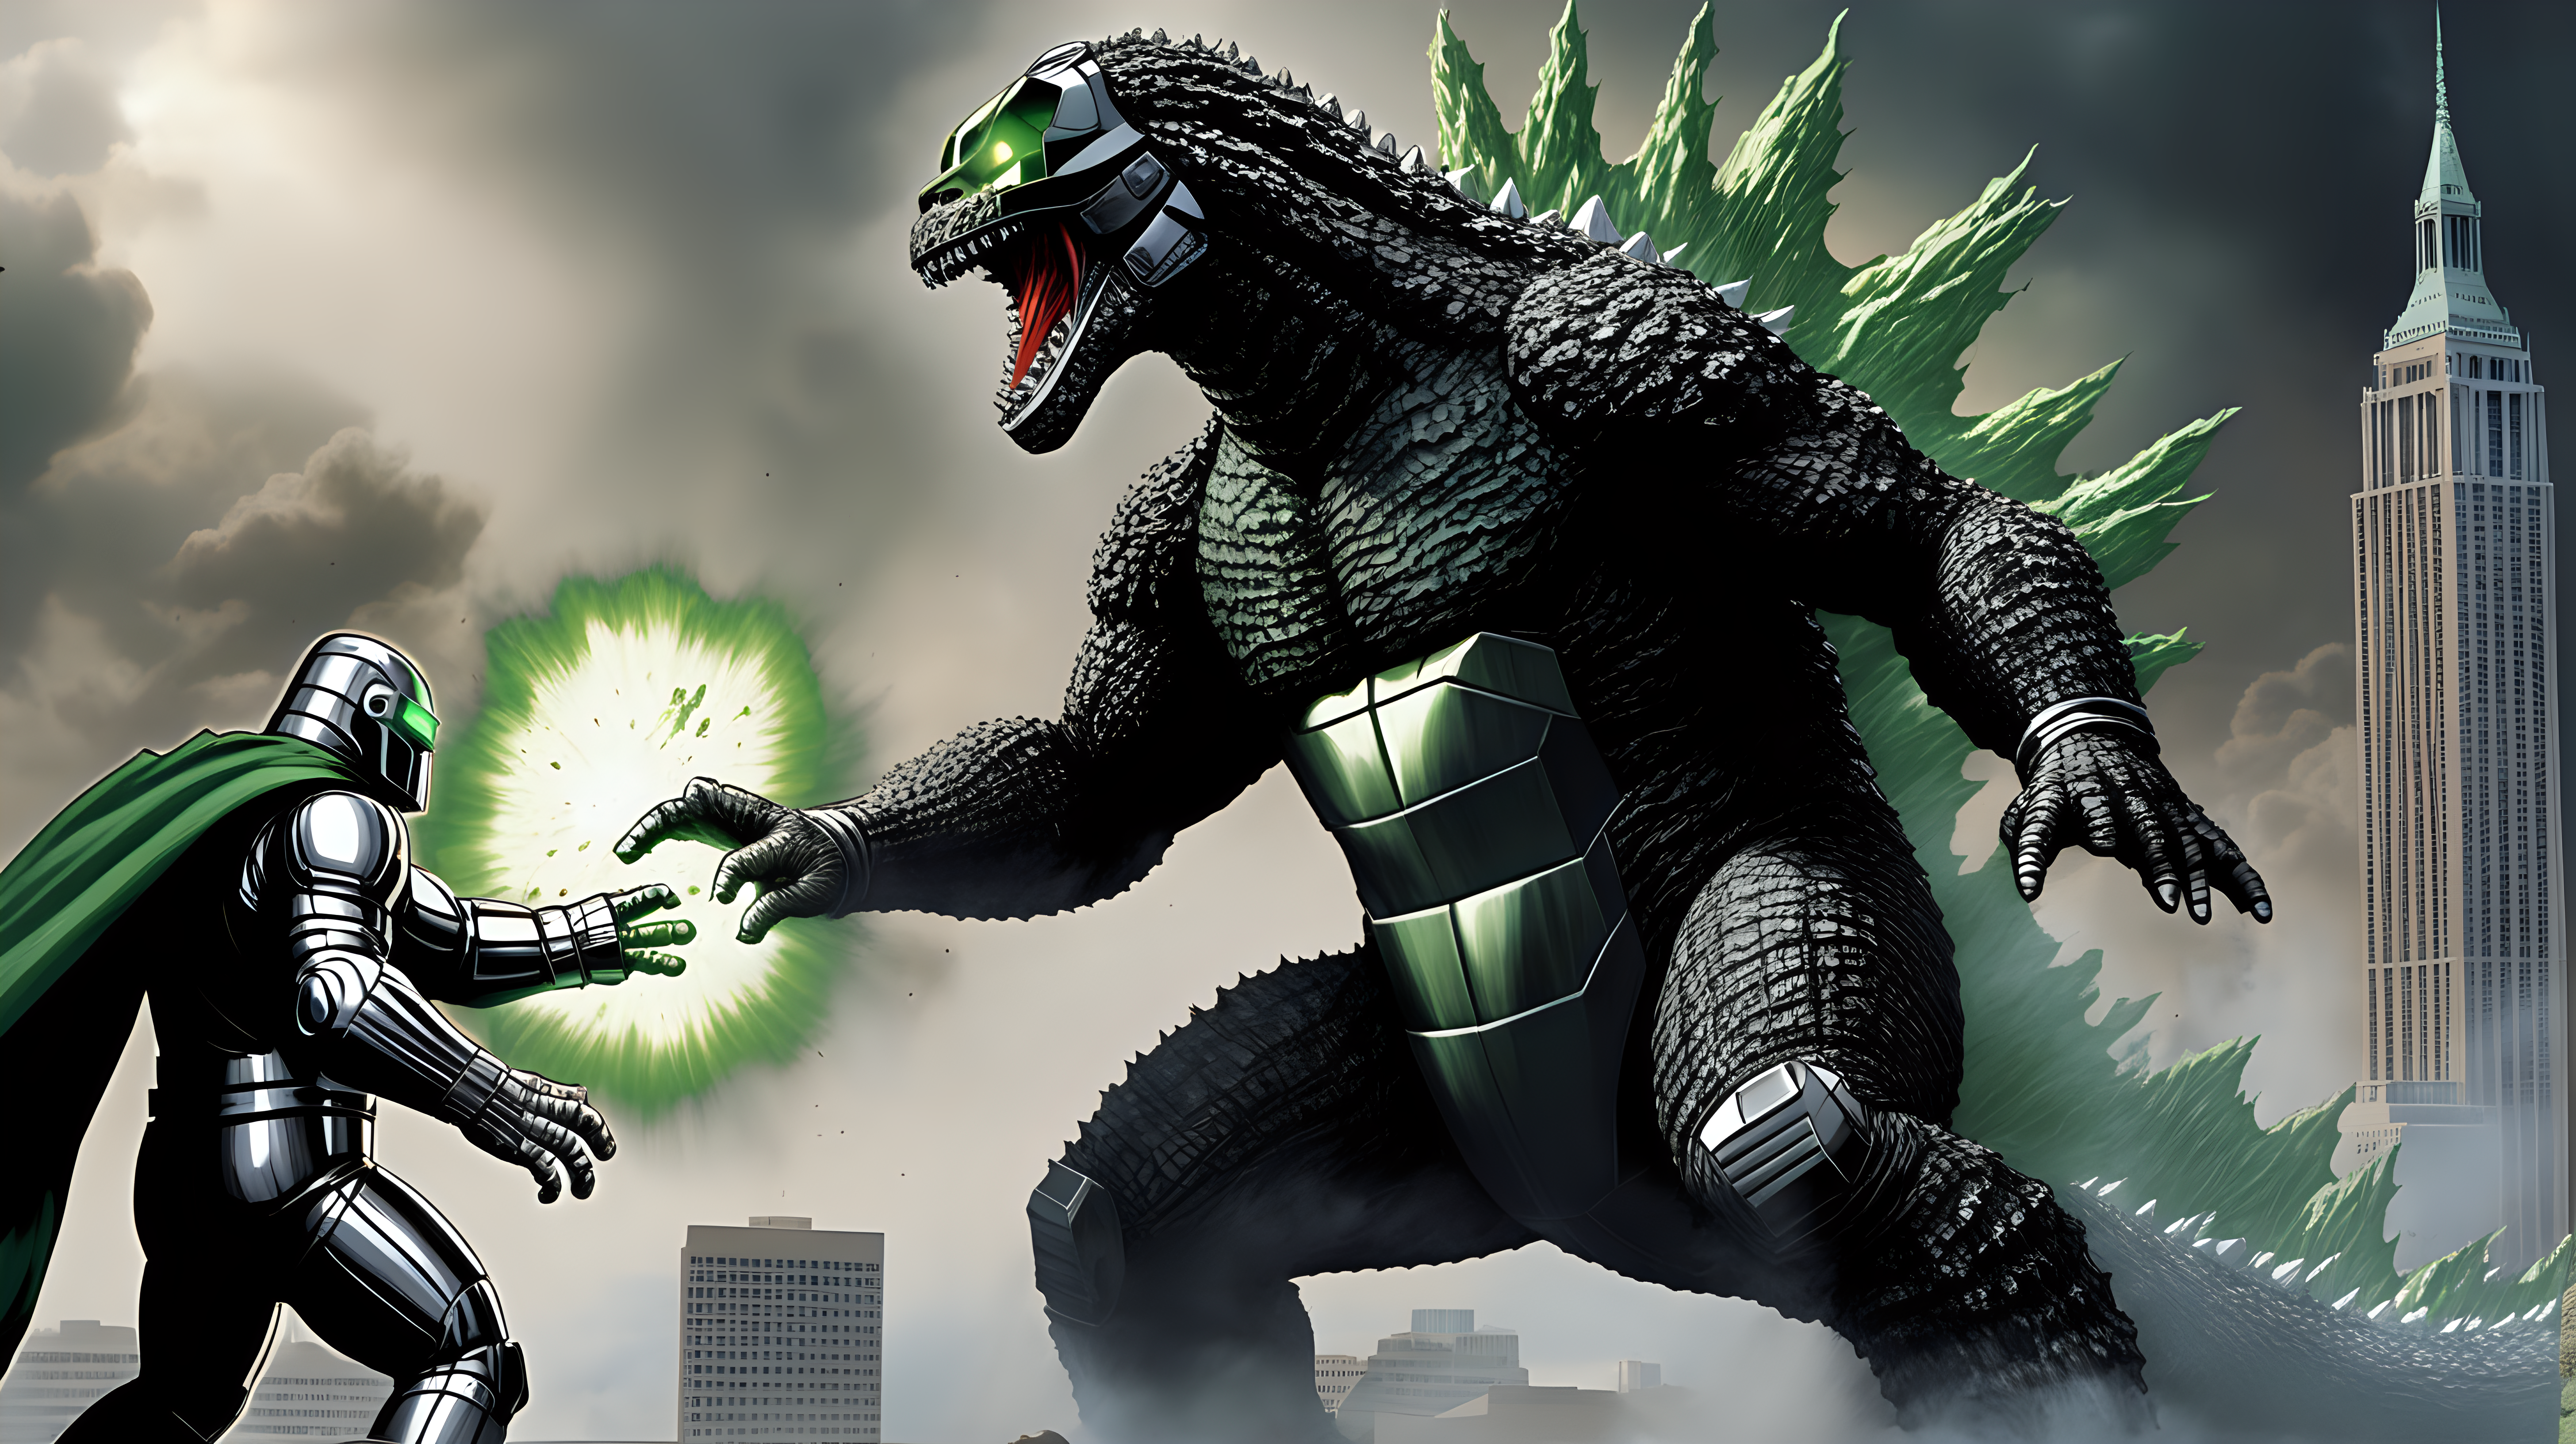 Godzilla fighting Doctor Doom